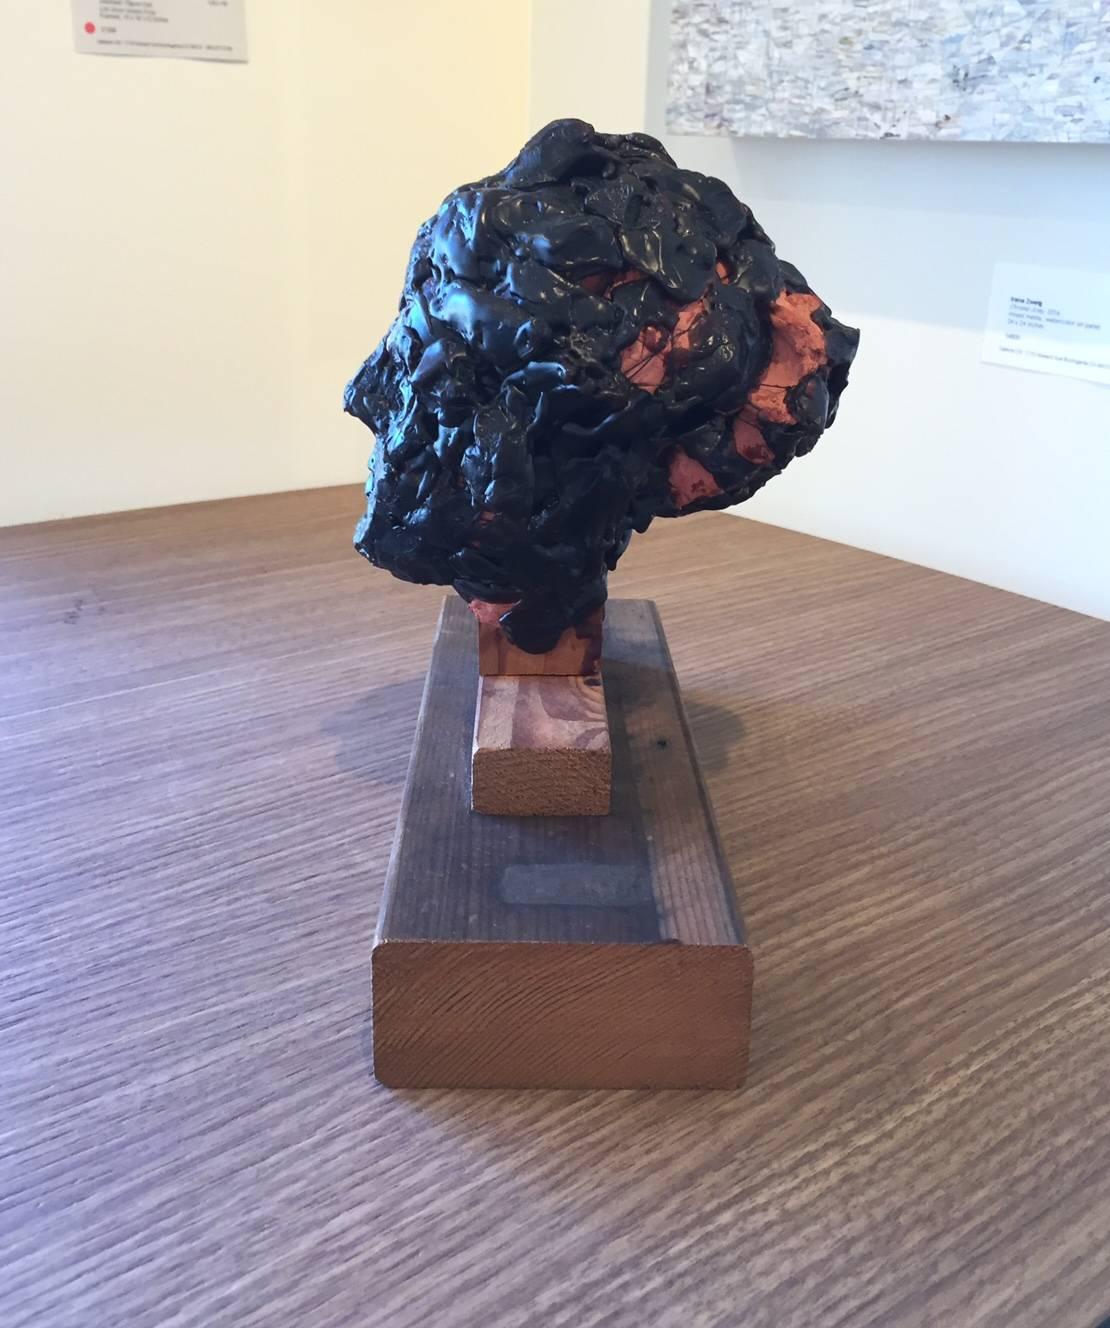 Bust / Head No. 1 2014 - Sculpture by John Goodman